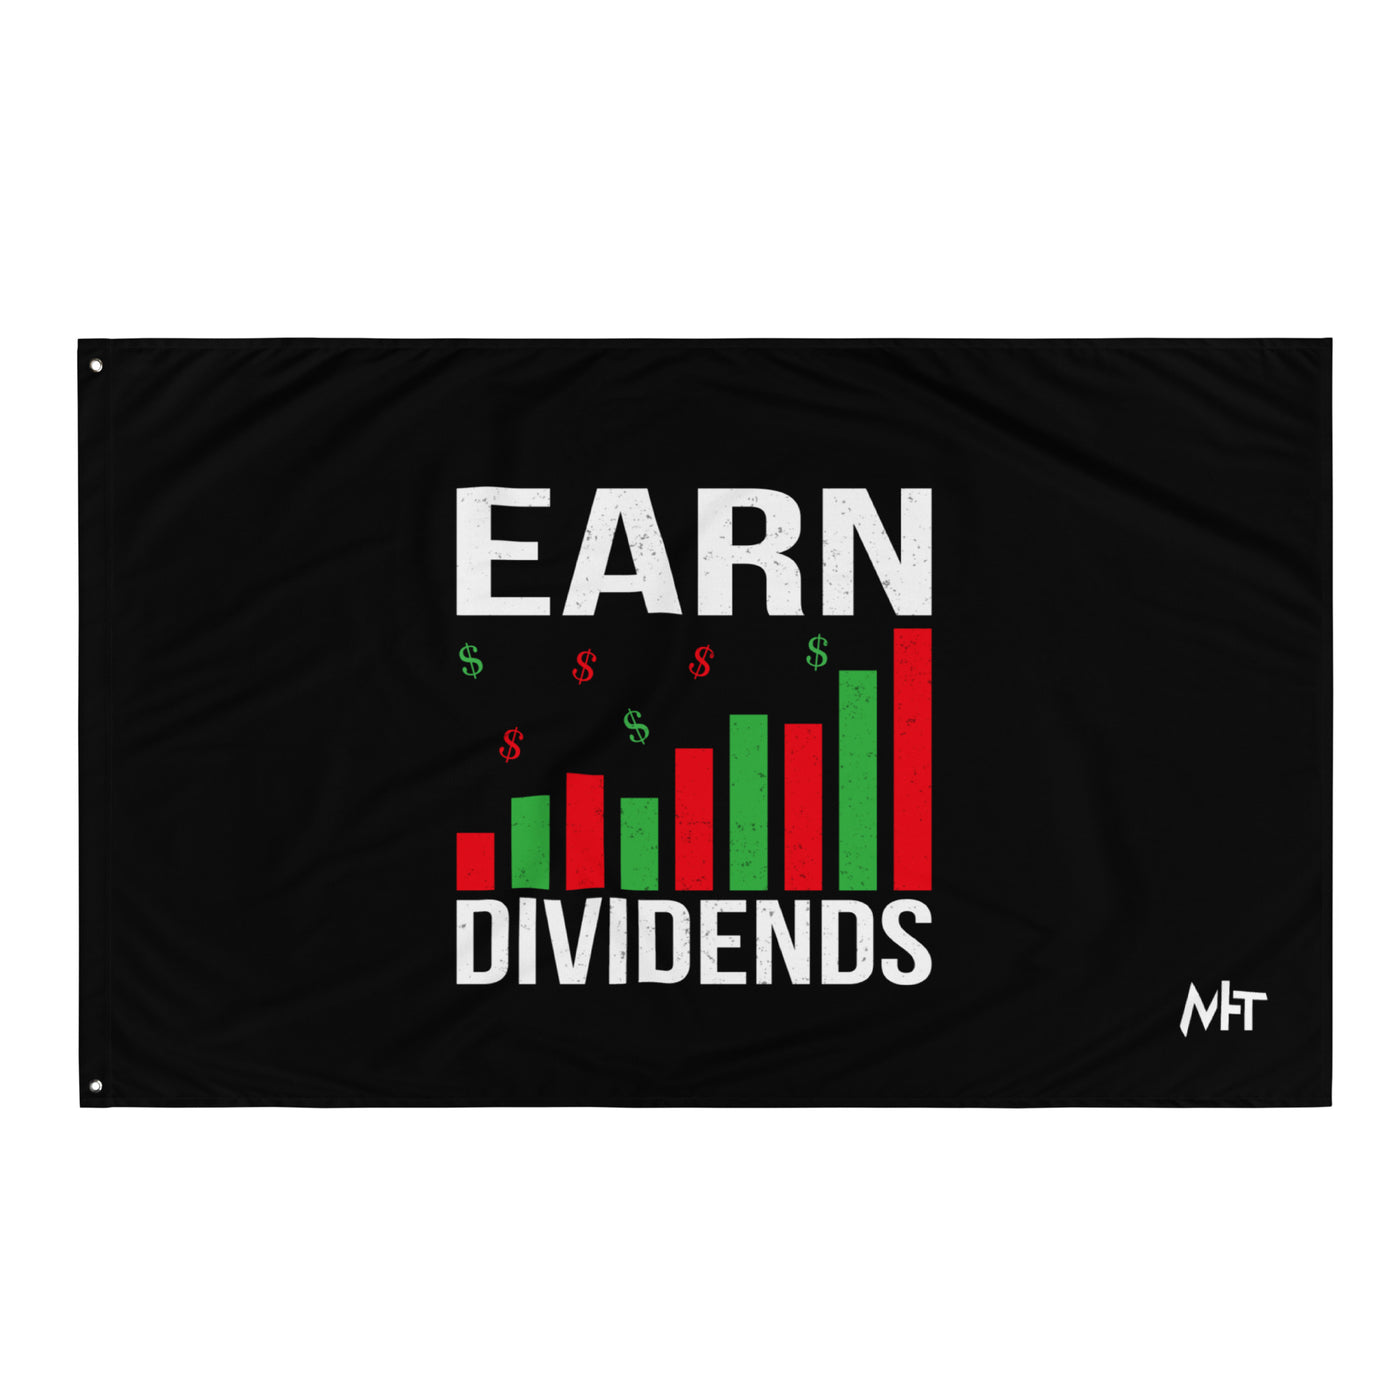 Earn Dividends - Flag